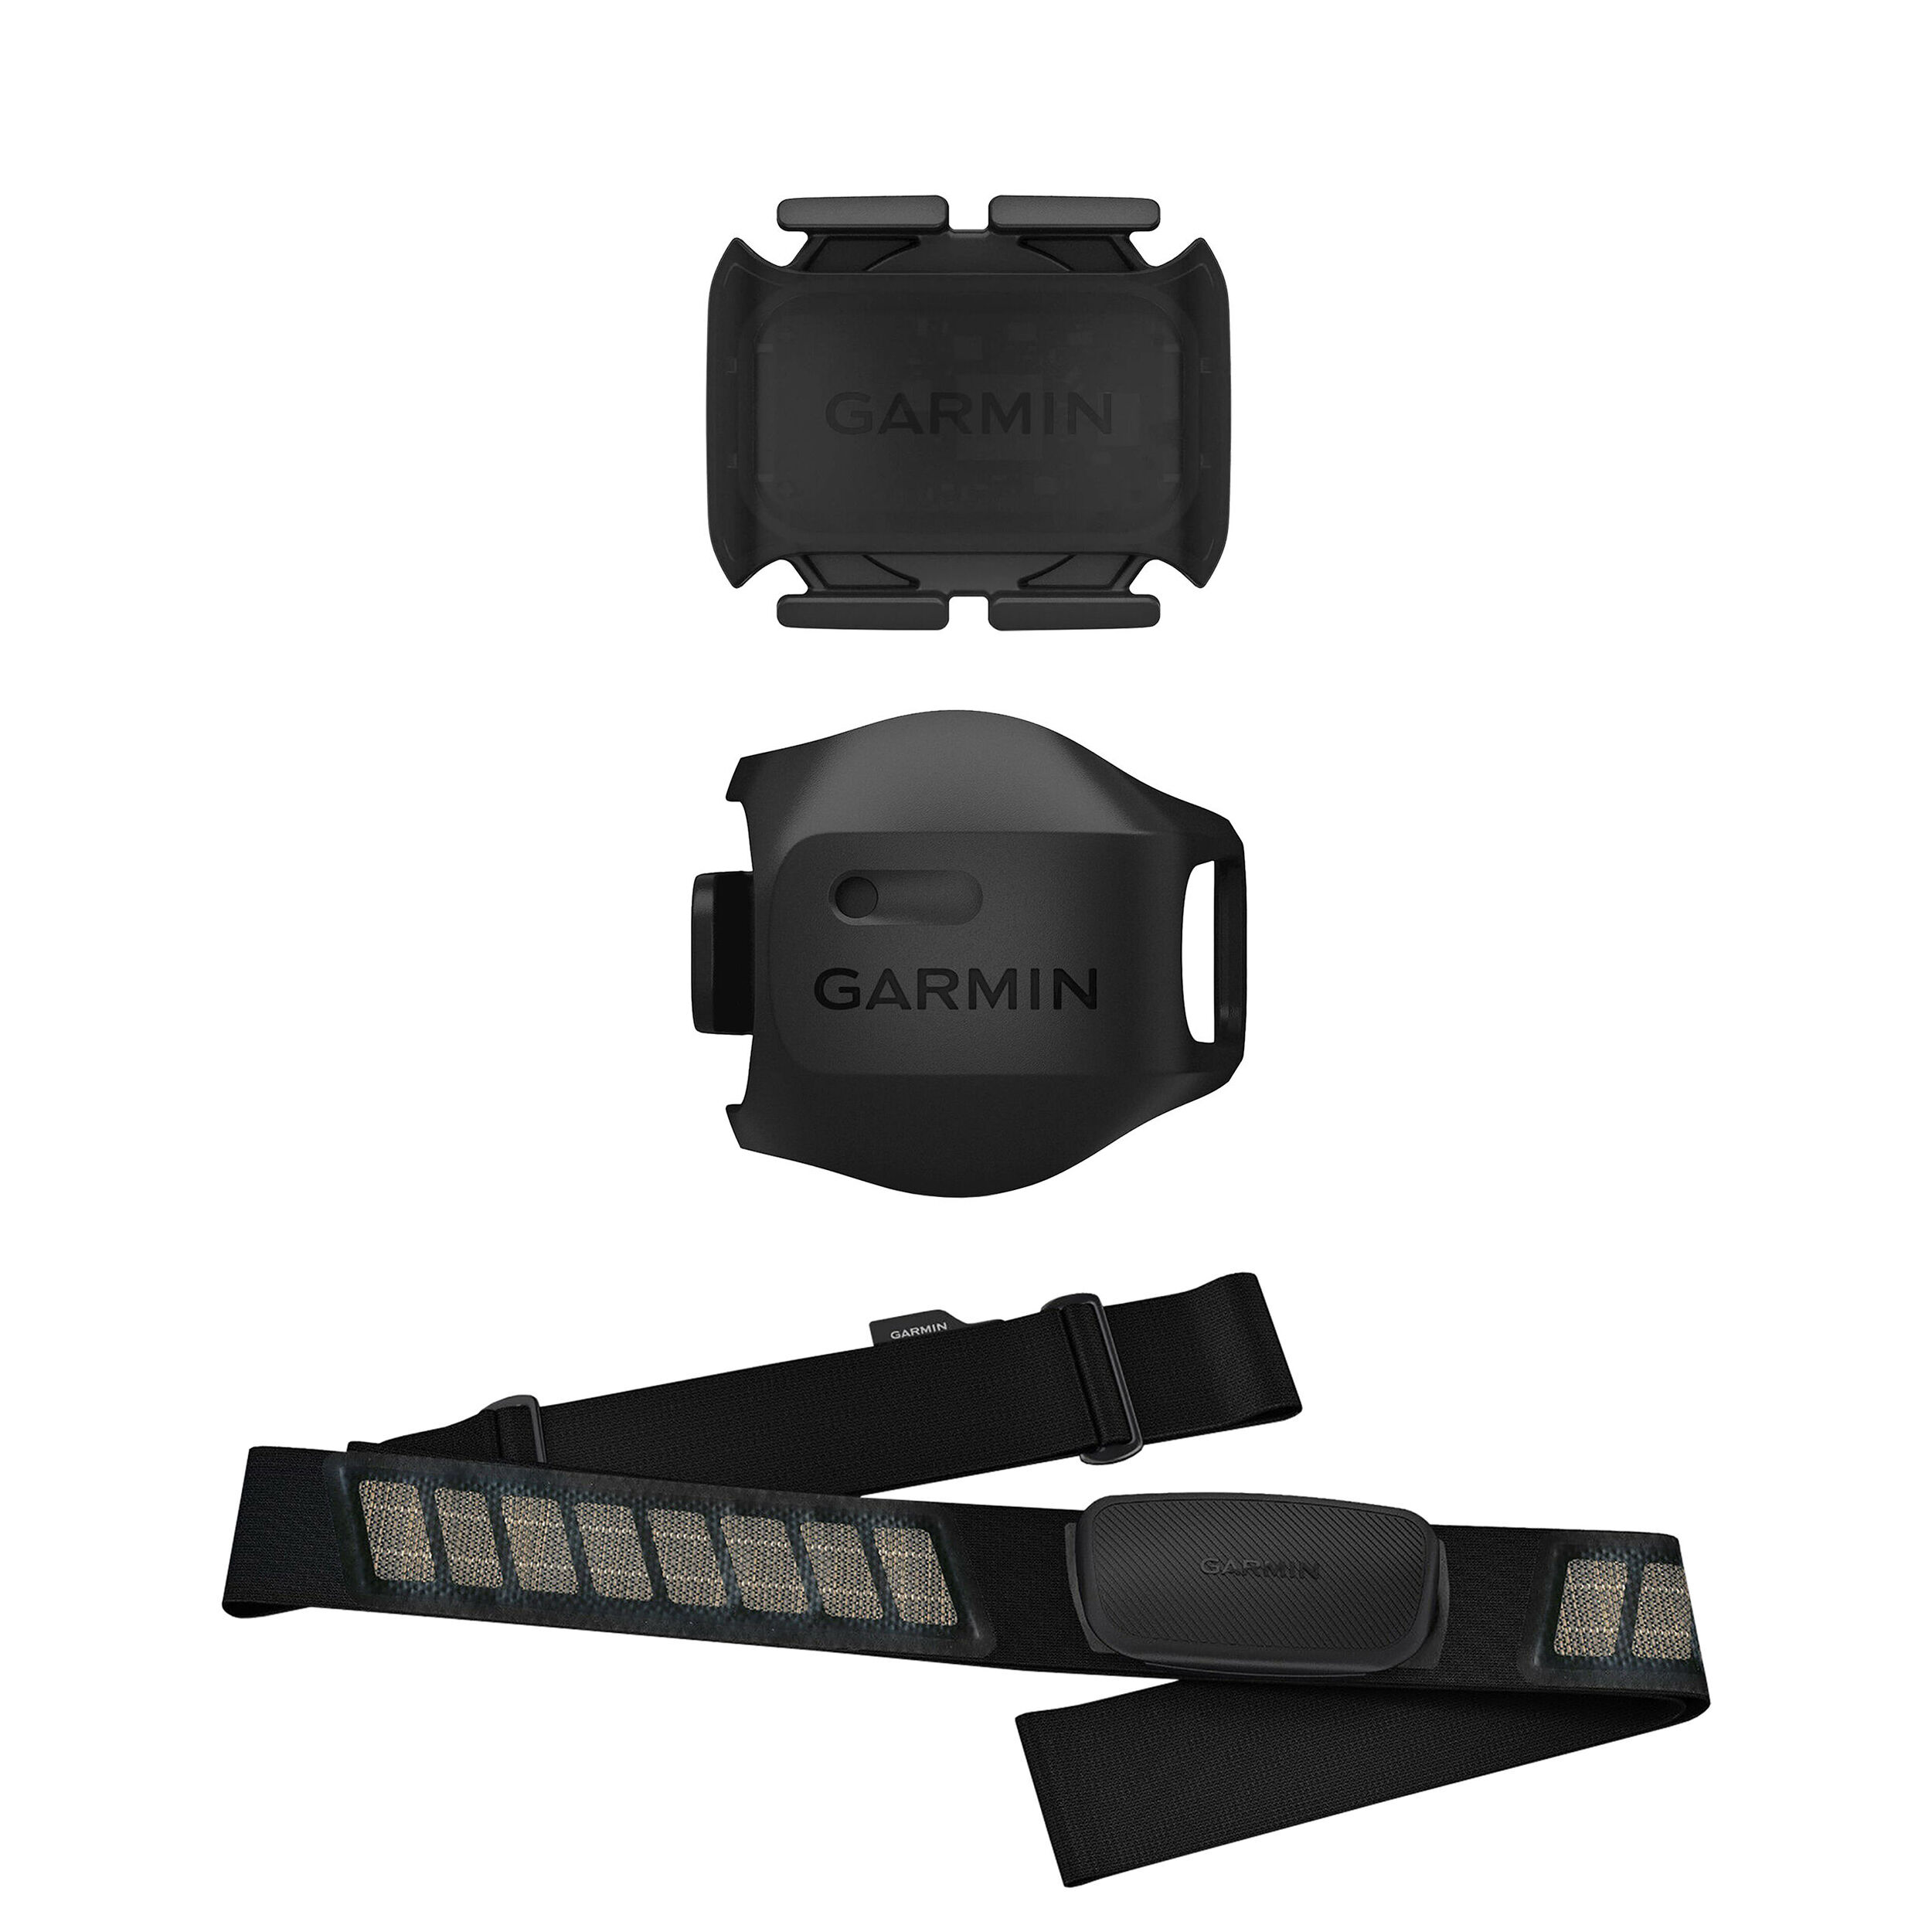 Garmin Speed & Cadence Sensor - Setup and Review 